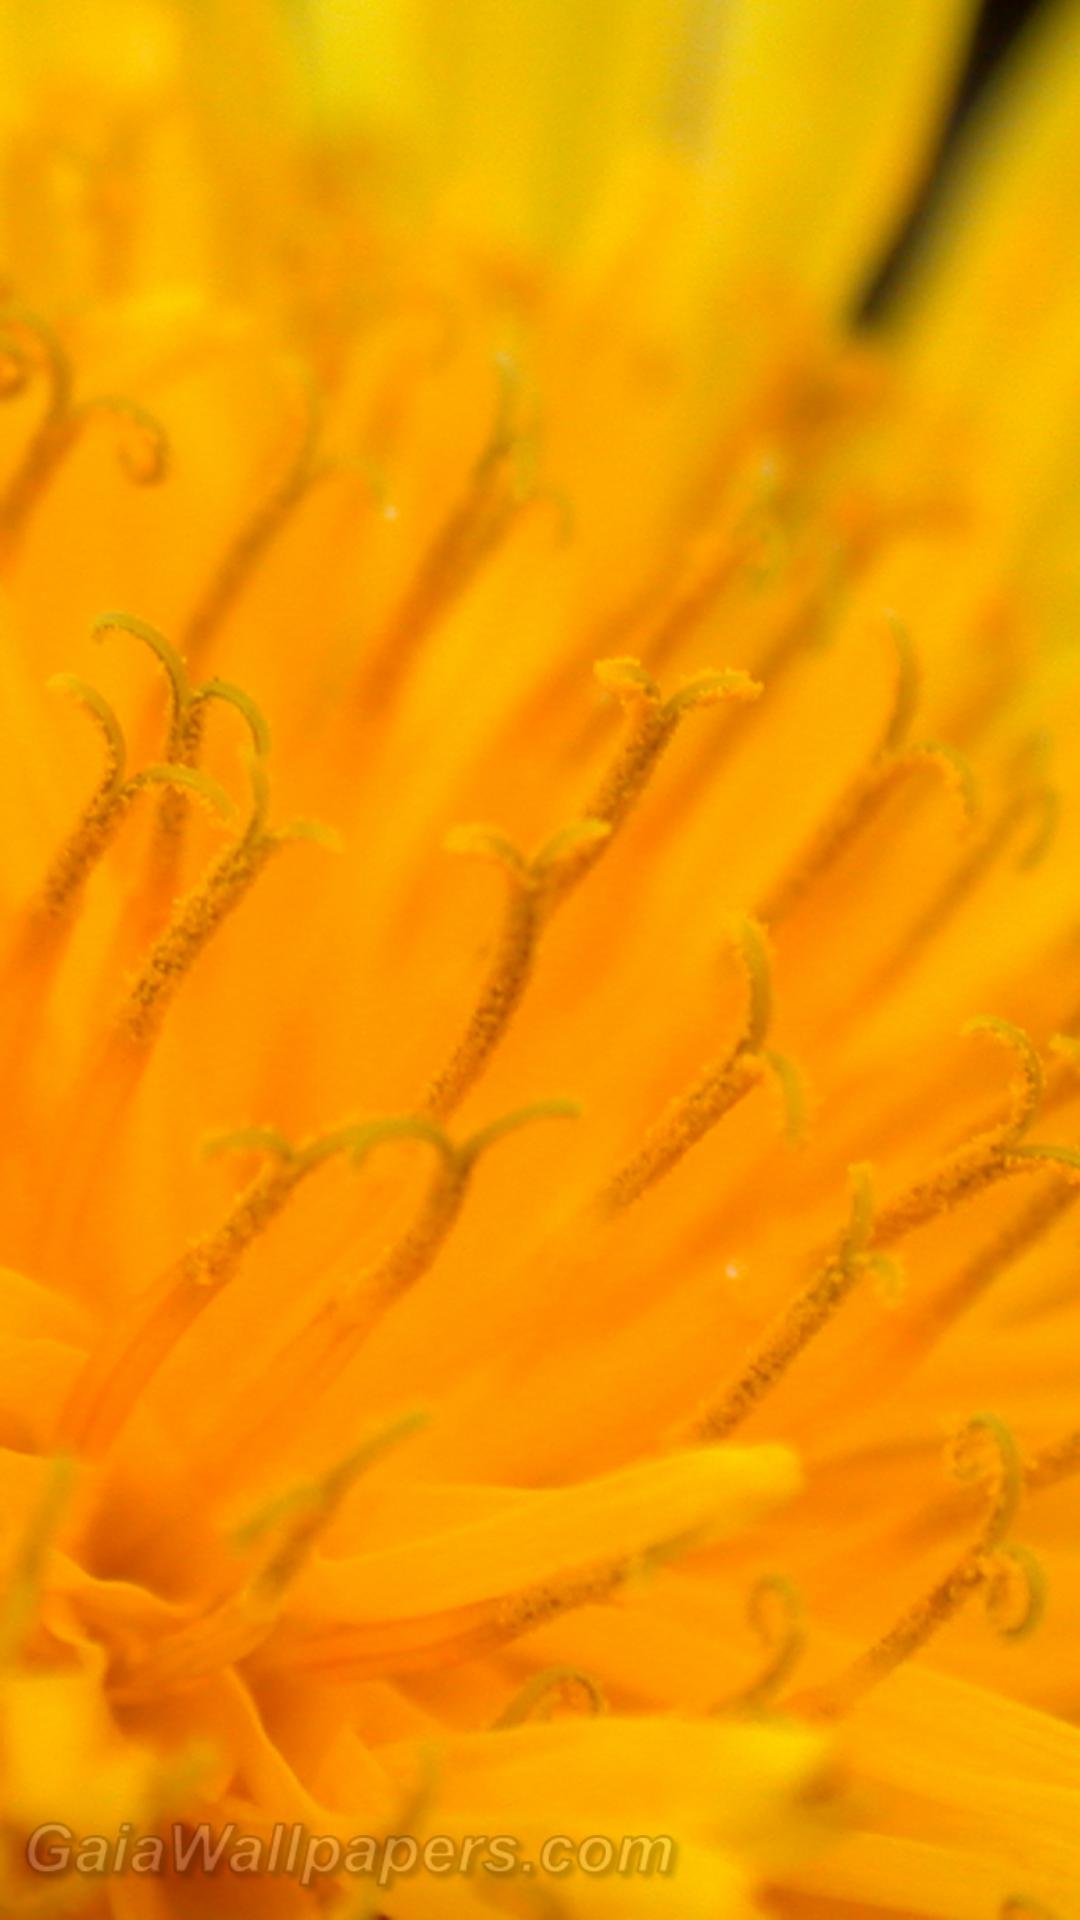 Pollen dans un pissenlit - Fonds d'écran gratuits